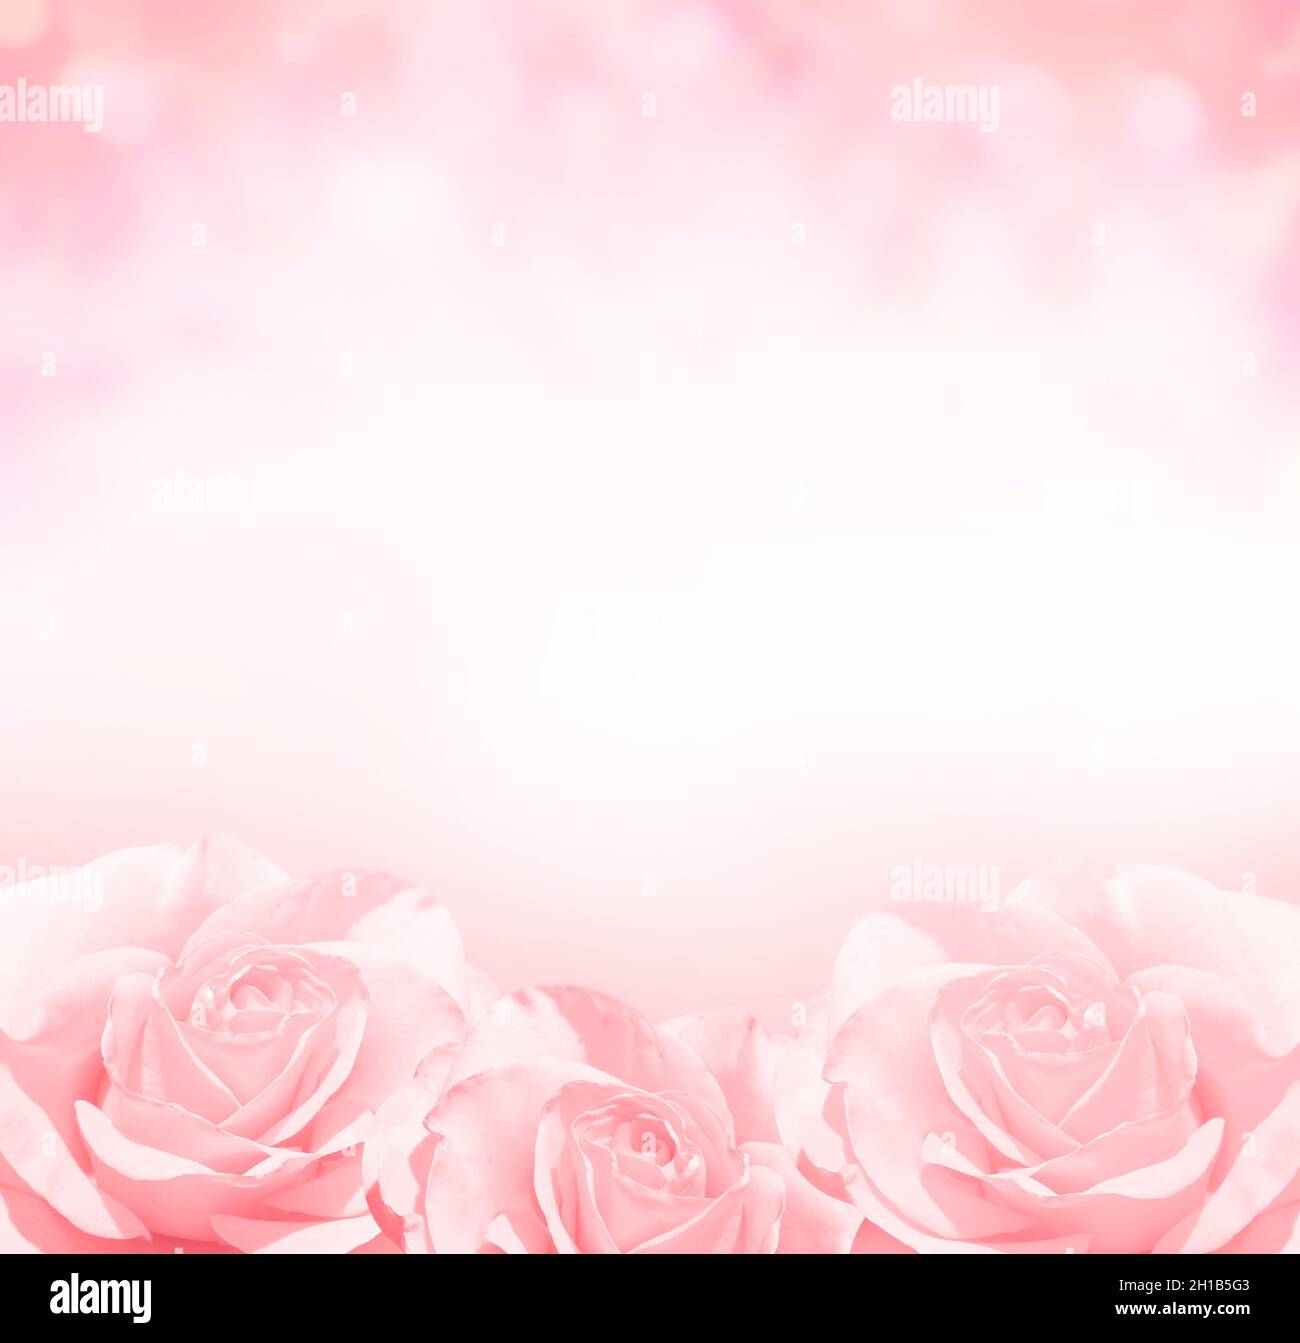 Pink Roses: Hoa hồng màu hồng tươi tắn, mềm mại và thơm ngát - hình ảnh này sẽ đưa bạn vào một cảm giác tình yêu, sự ngọt ngào và hạnh phúc.